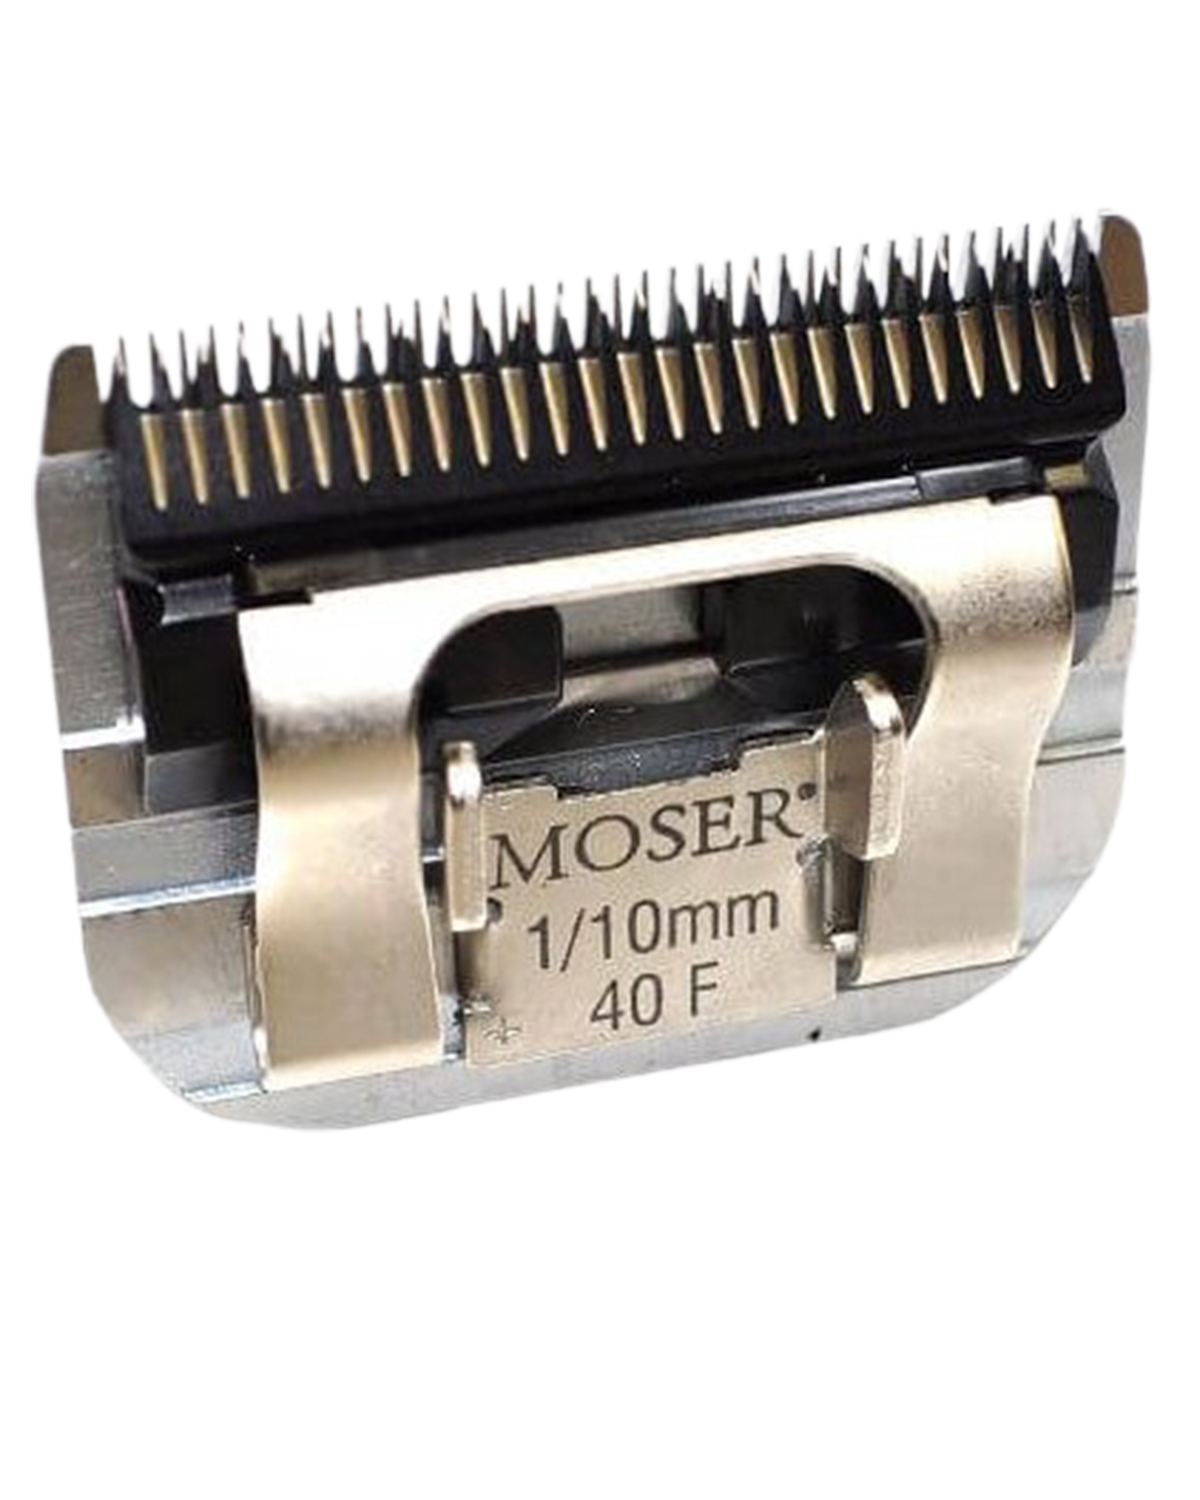 Ножевой блок moser. Ножевой блок Moser 1245-7310, 1/10 мм, стандарт а5. Moser 1245-7310. Нож Moser 1245-7310. Ножевой блок Moser 0,1mm.